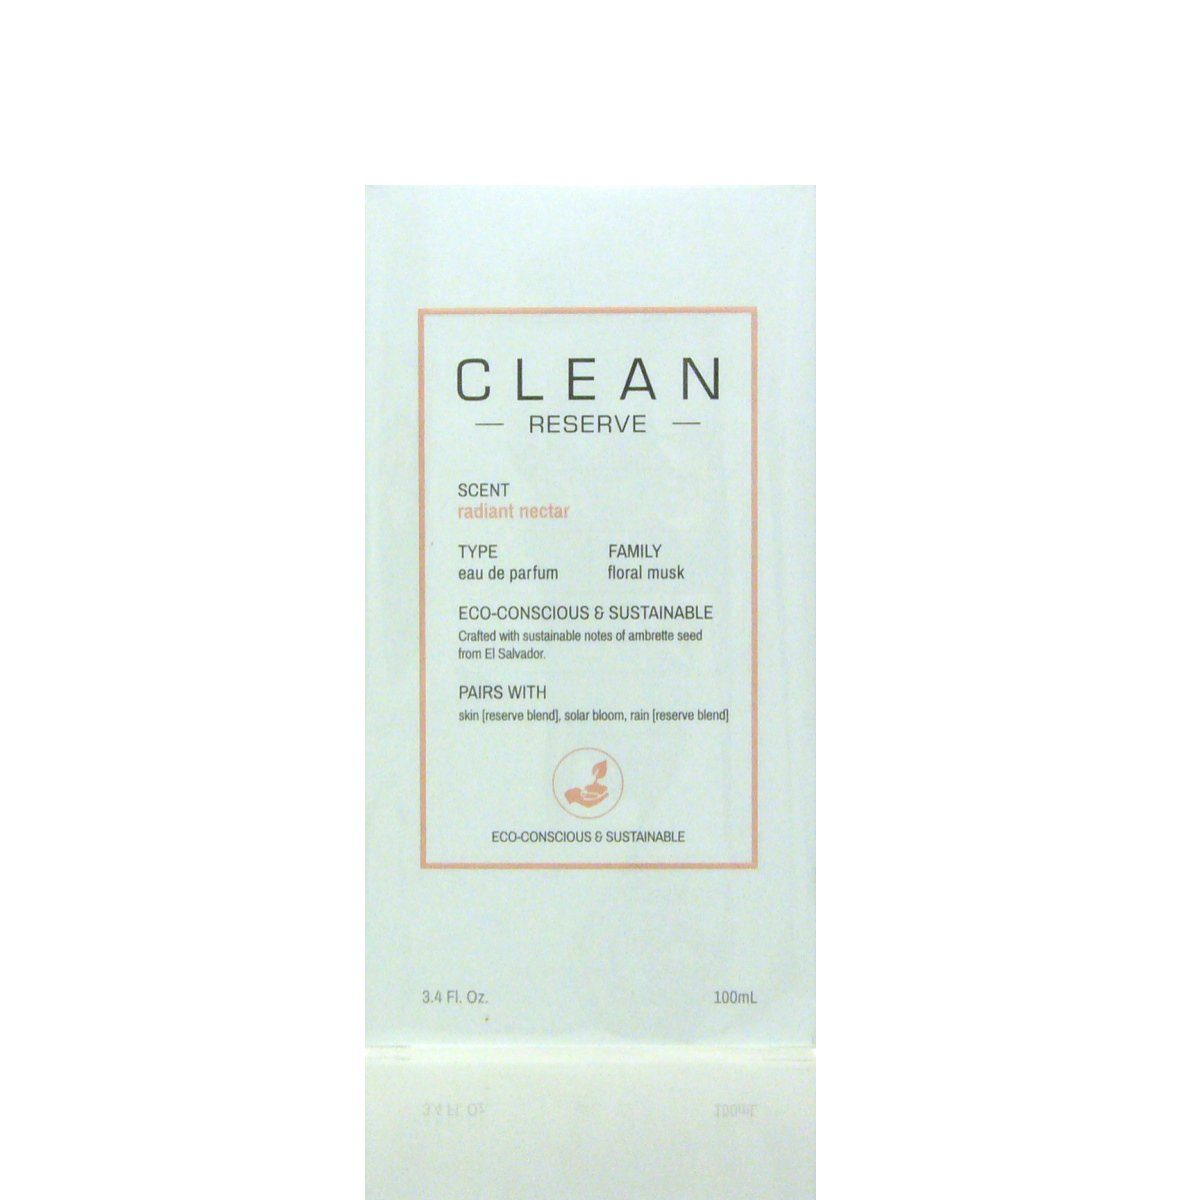 Clean Eau de Parfum Parfum de CLEAN Nectar Reserve Radiant Eau 100 ml